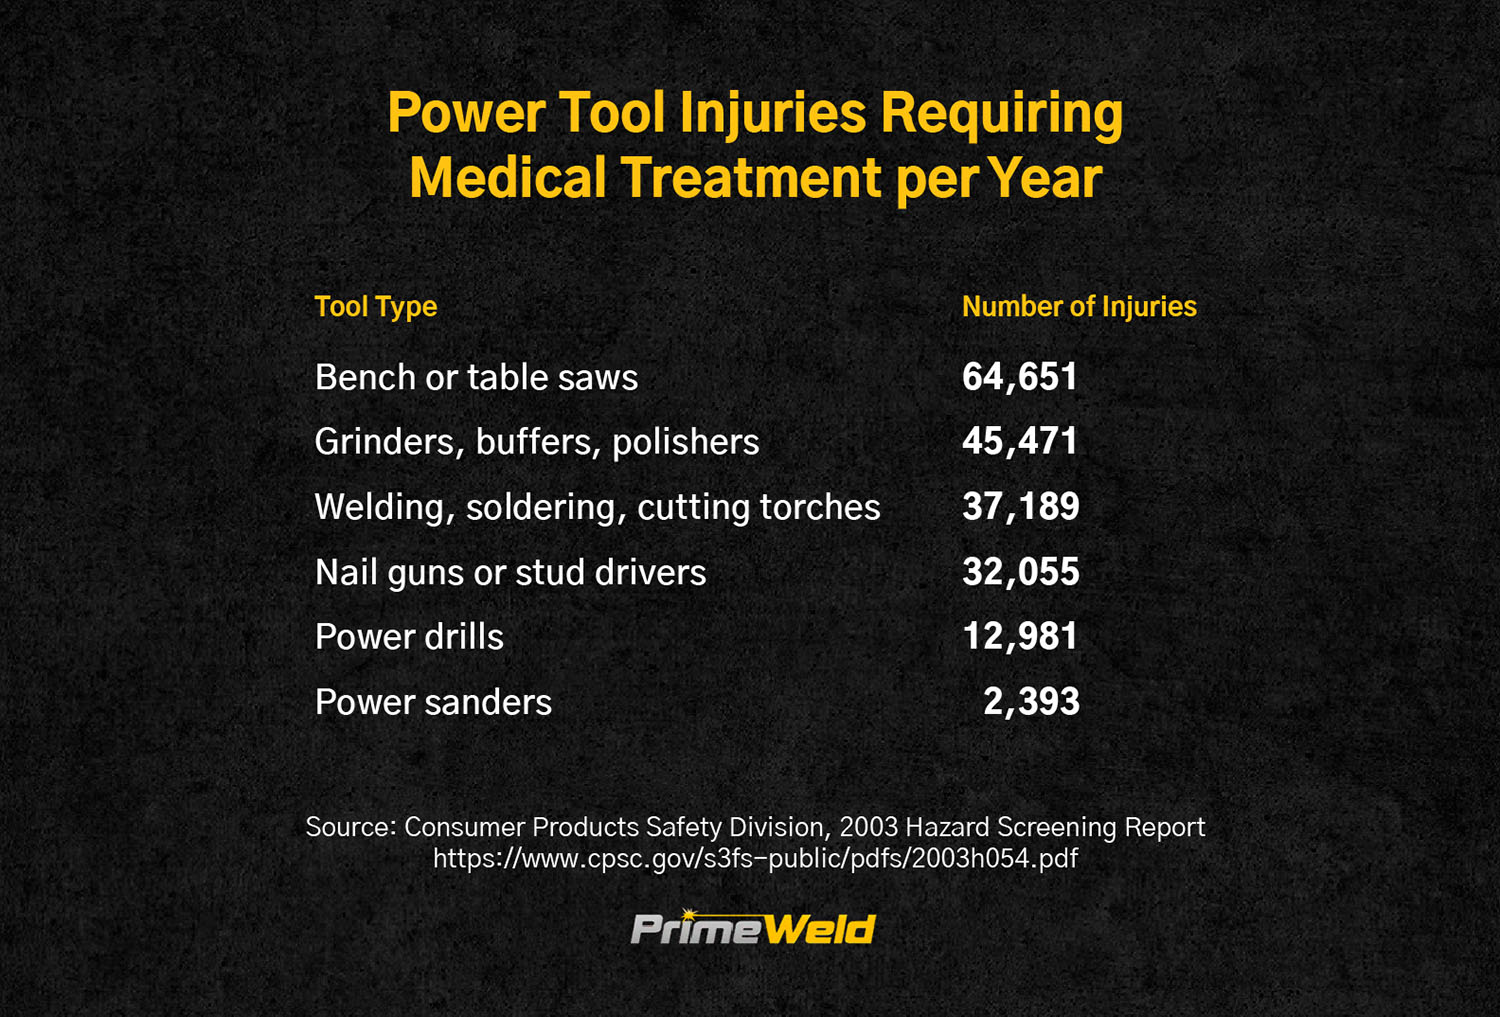 Lesiones más comunes con herramientas eléctricas (incluye adultos y usuarios de herramientas capacitados)